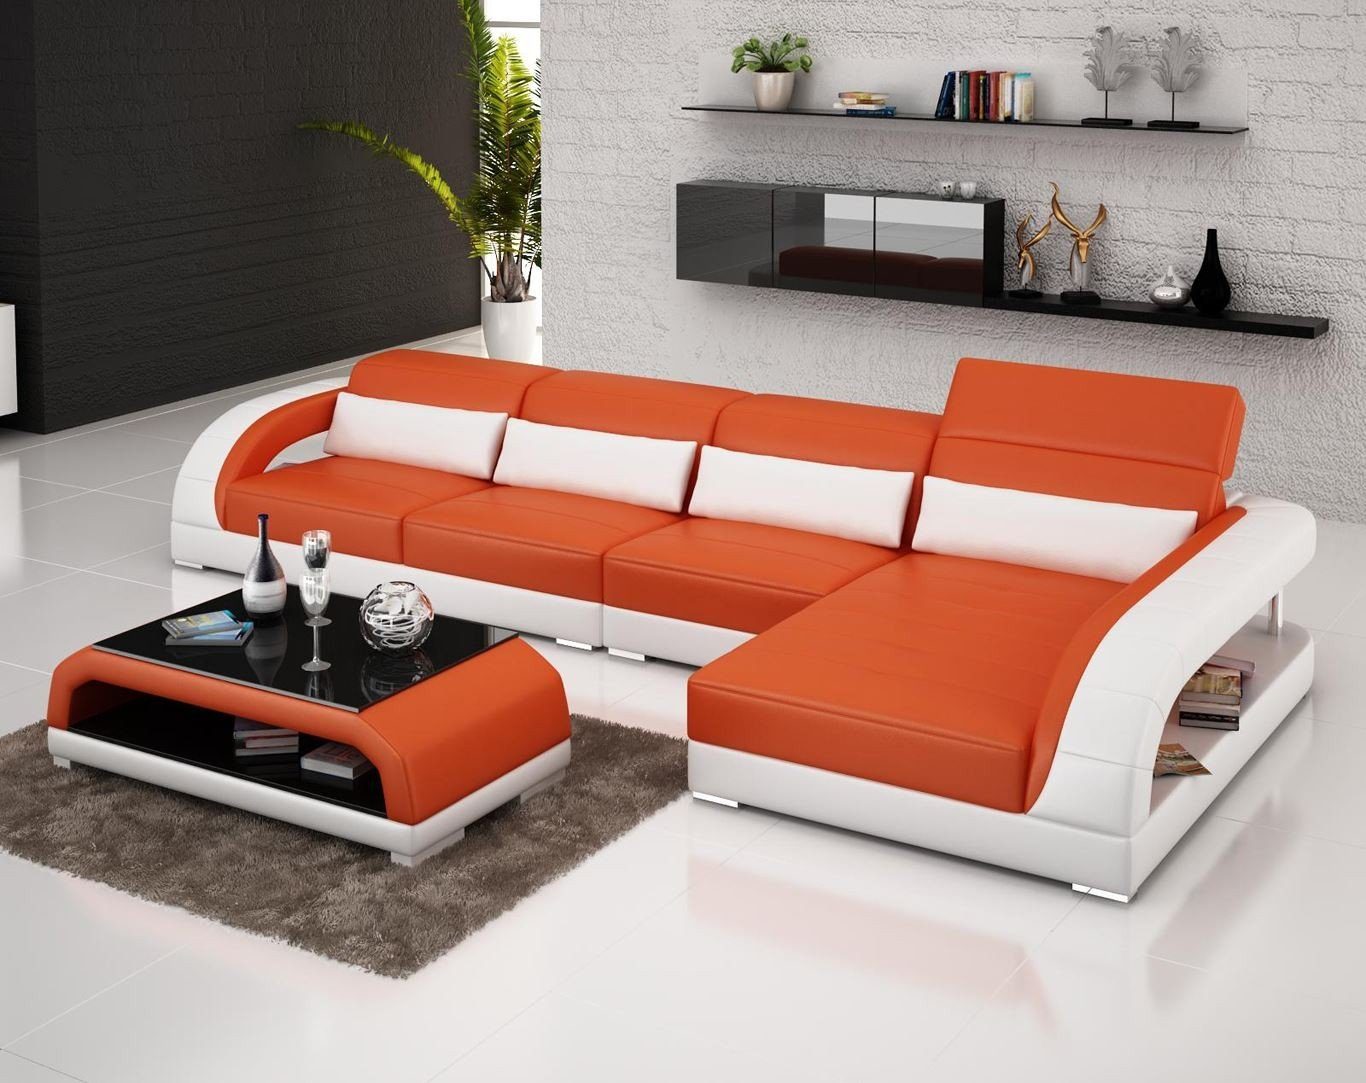 JVmoebel Ecksofa, Exclusive Wohnzimmer Couch Poster L Form Couchen Sofa Wohnlandschaft Orange/Weiß